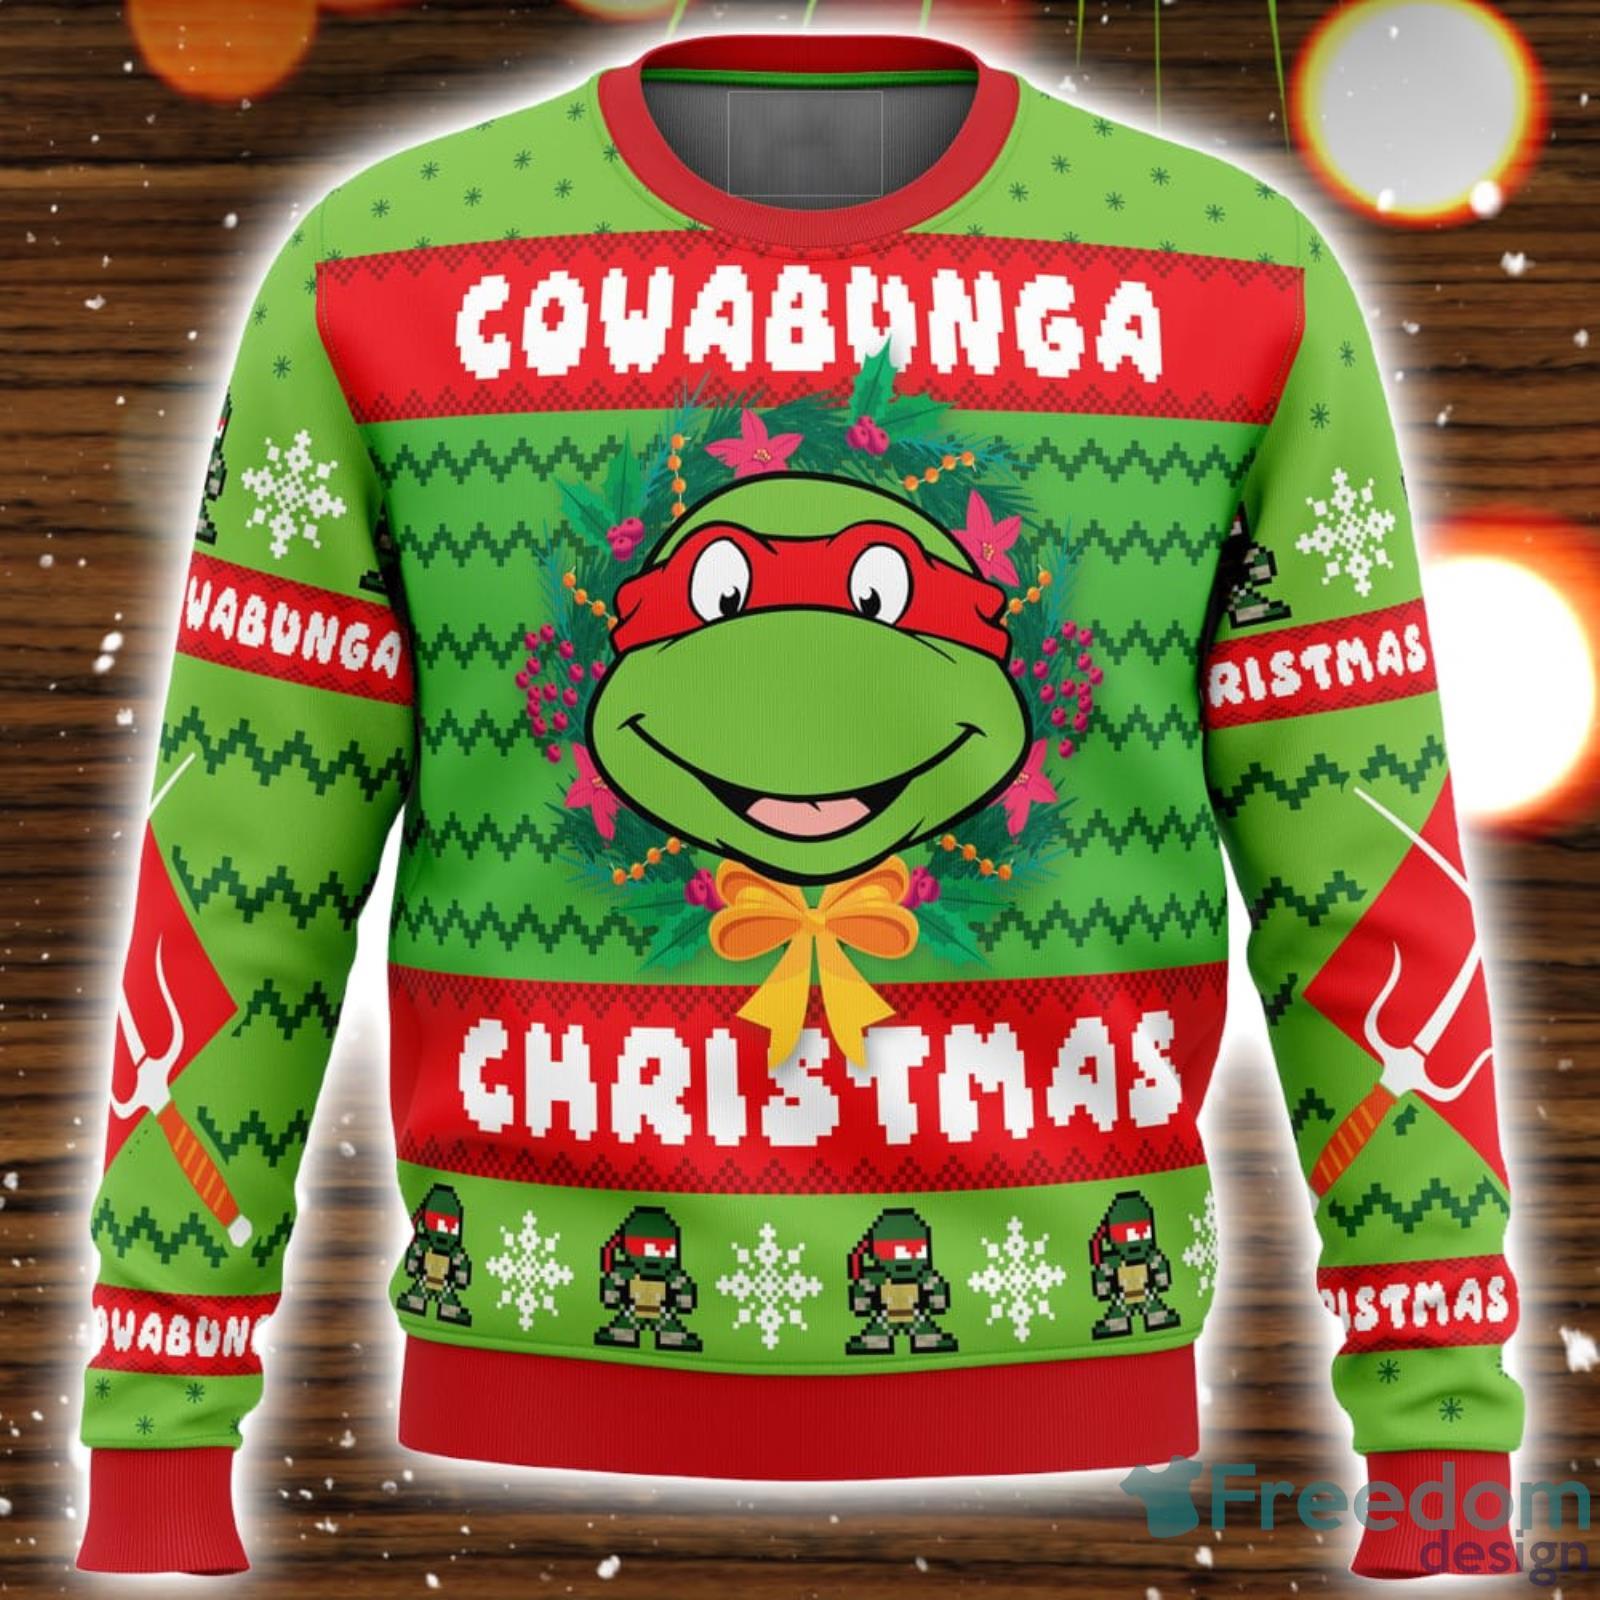 https://image.freedomdesignstore.com/2023/10/cowabunga-raphael-christmas-teenage-mutant-ninja-turtles-ugly-christmas-sweater-unisex-3d-christmas-sweater-gift.jpg